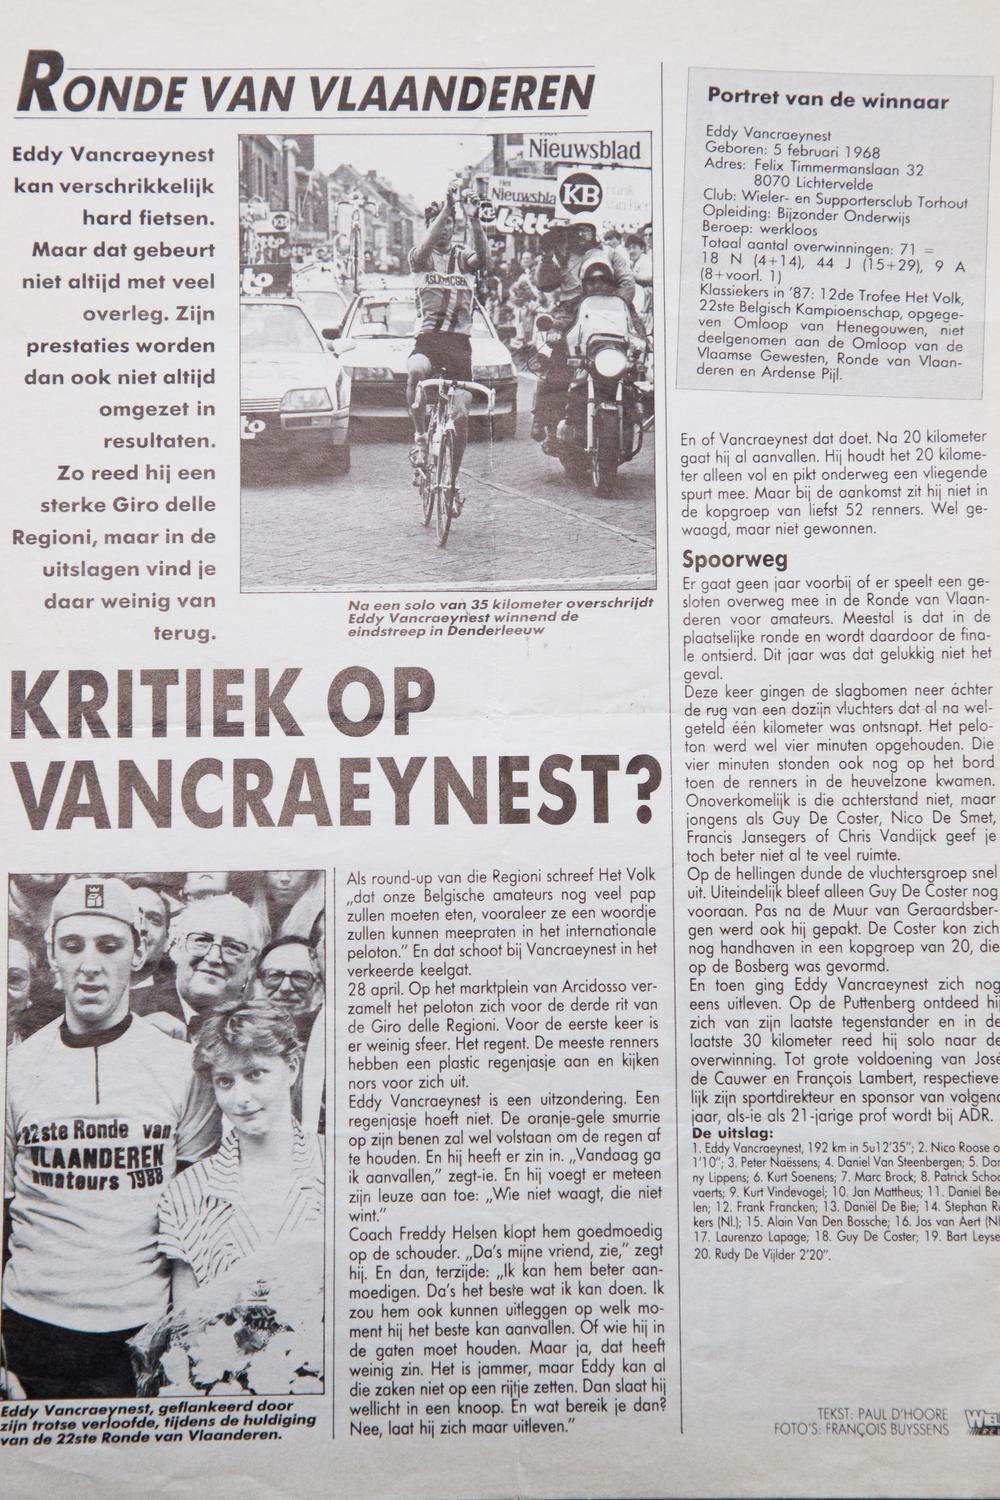 In 1988 won Eddy Vancraeynest na een solo van 35 km op imponerende wijze de Ronde van Vlaanderen voor amateurs. (Foto repro-Kurt)